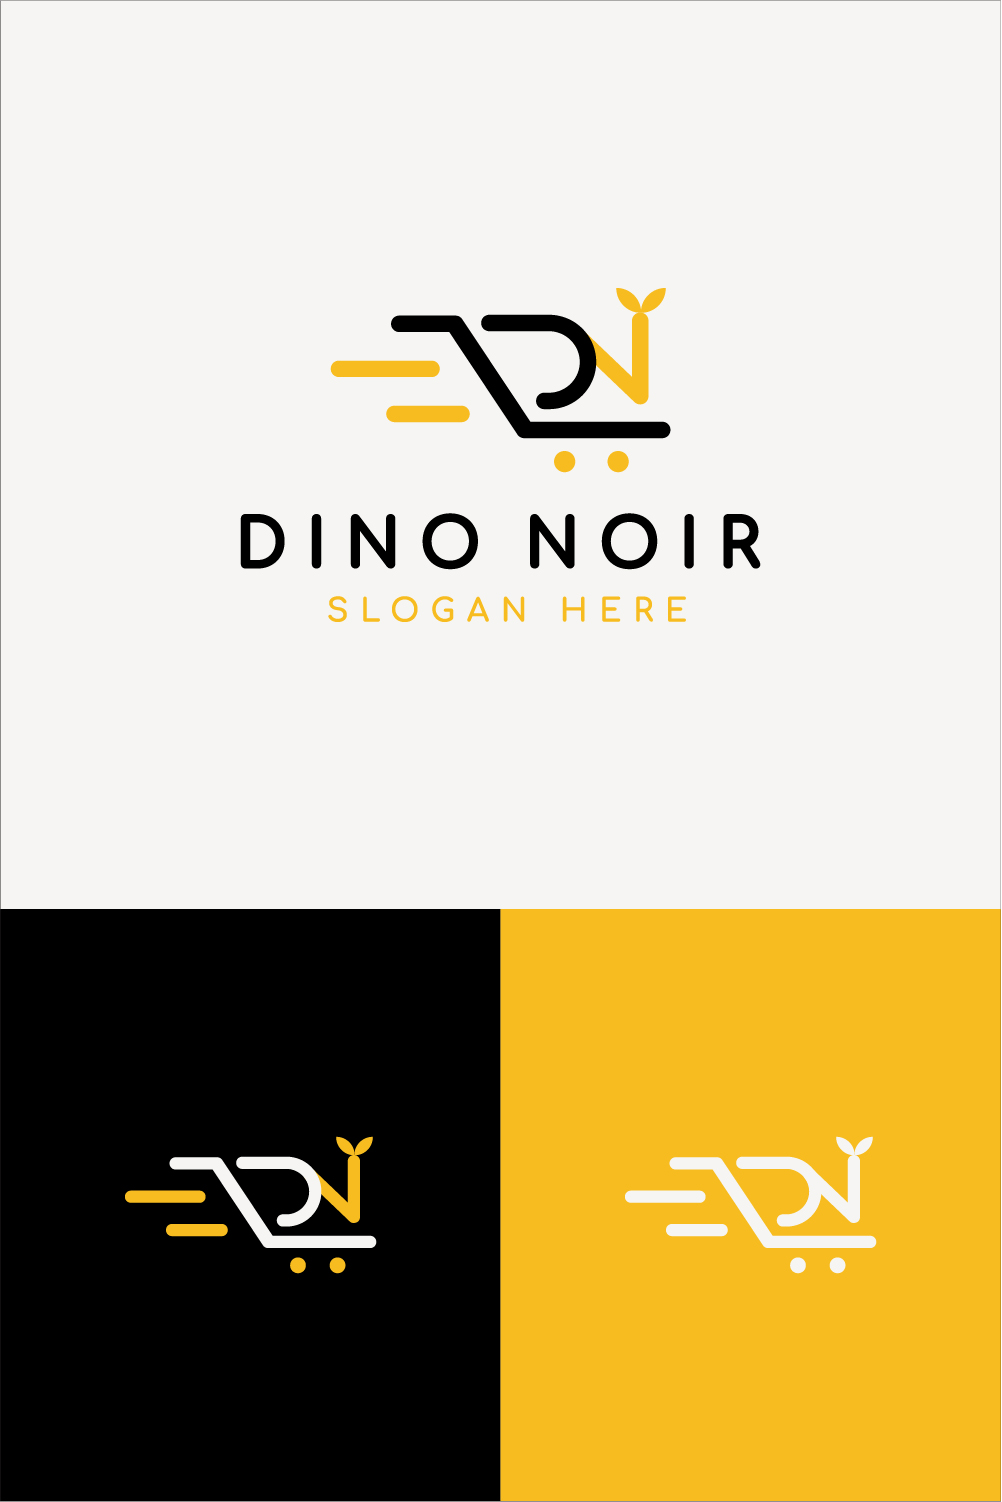 Letter D & N Shopping Cart Logo pinterest preview image.